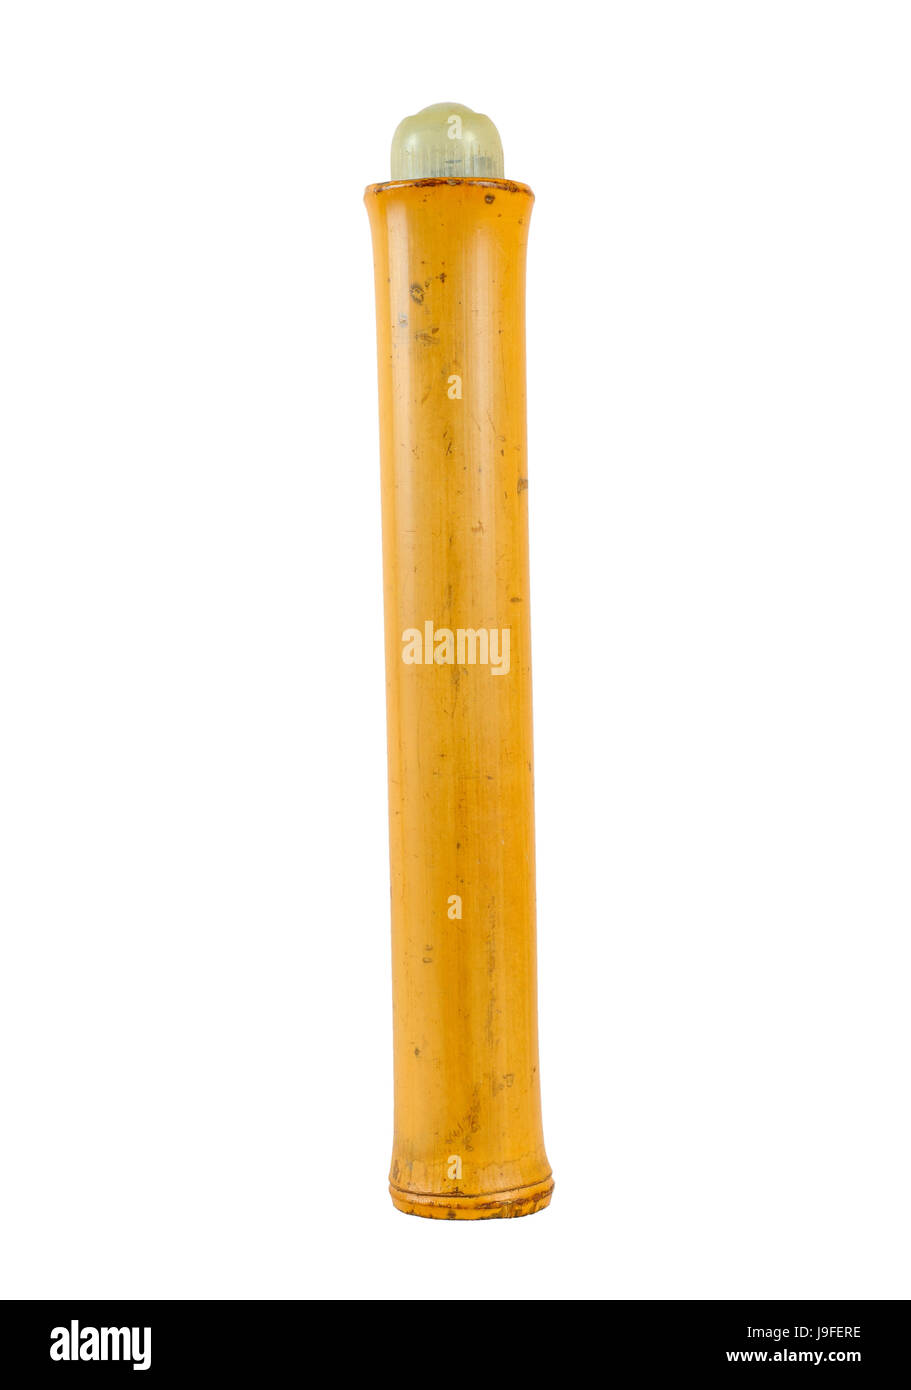 Un vieux bambou Shaker percussion isolé sur le fond blanc avec du liège Banque D'Images